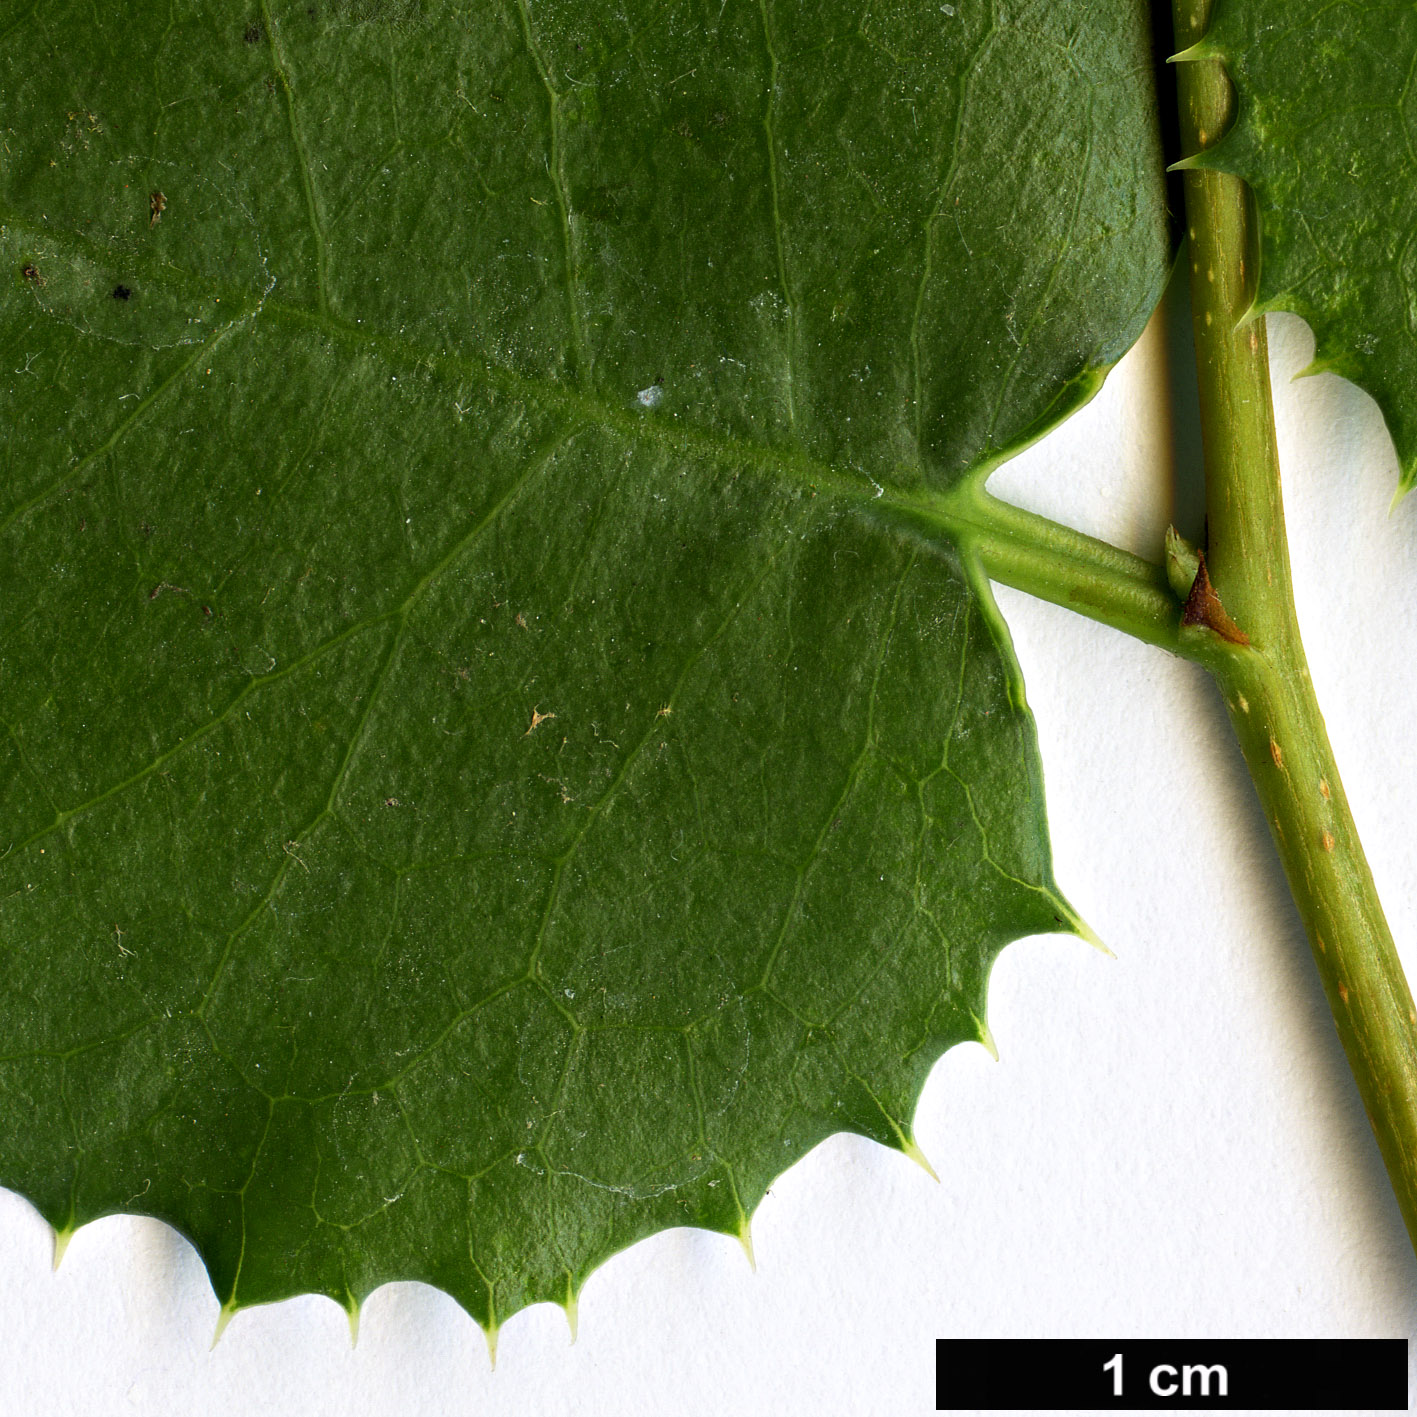 High resolution image: Family: Rosaceae - Genus: Prunus - Taxon: ilicifolia